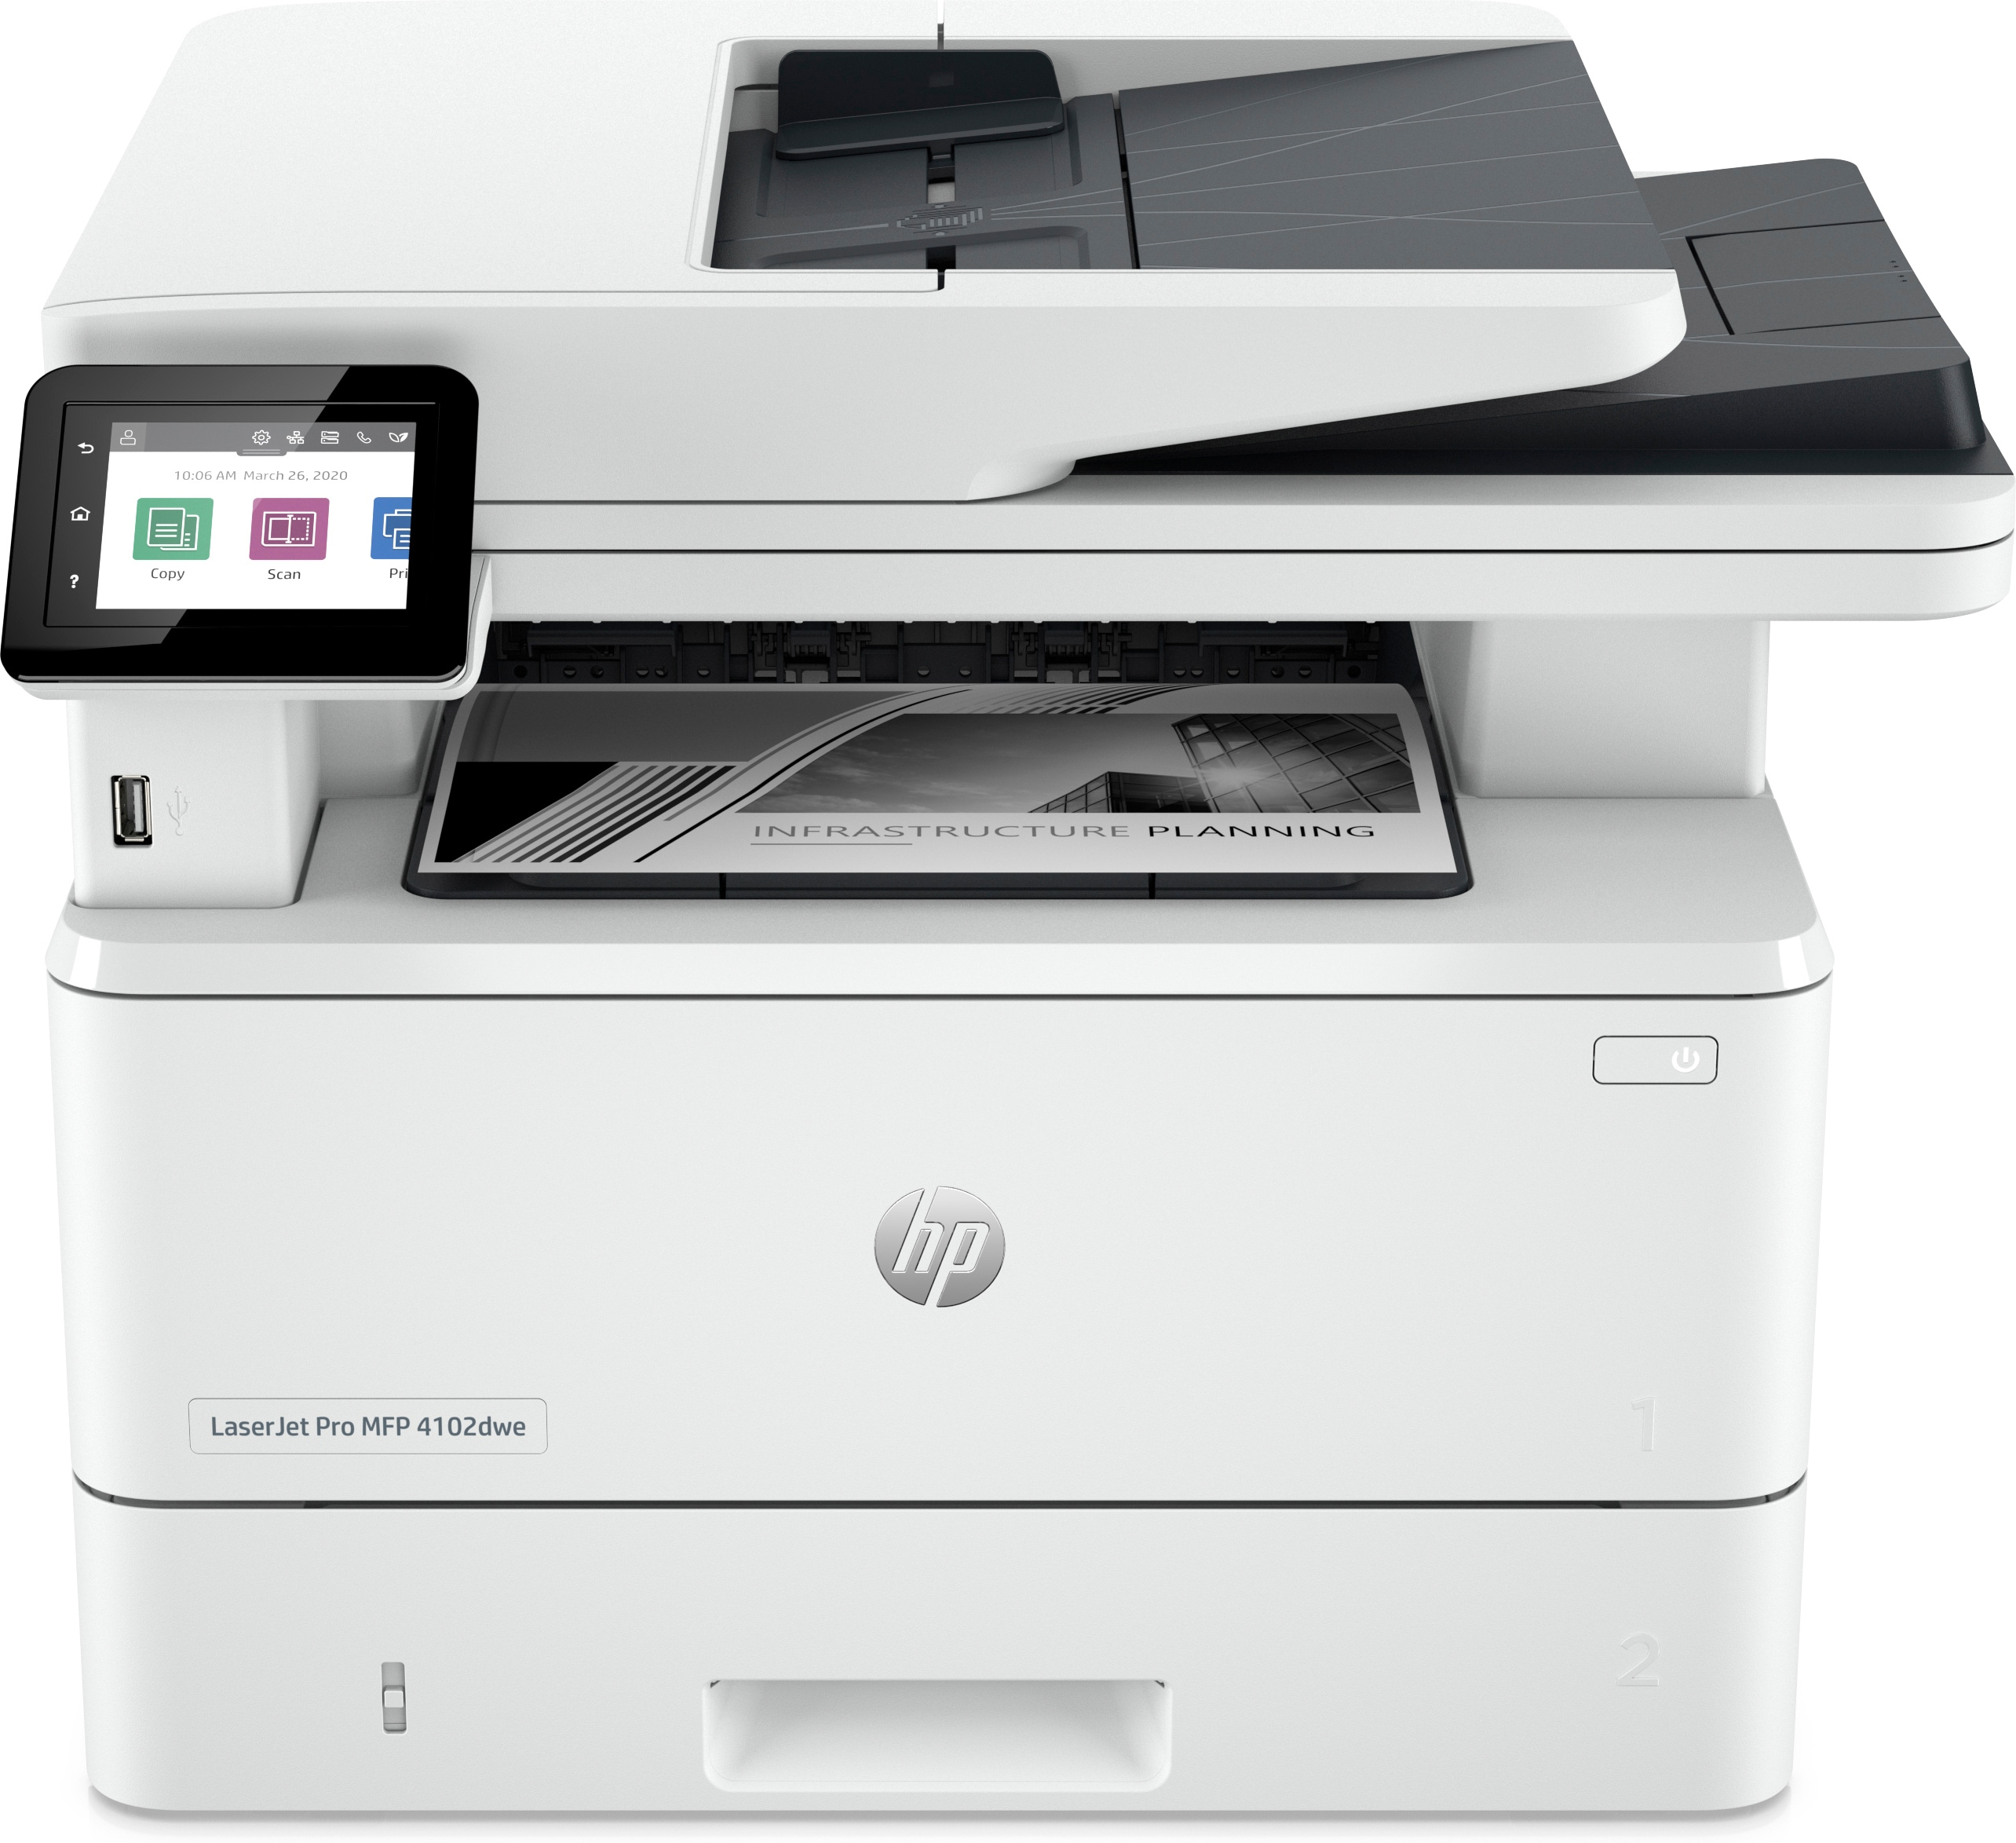 HP LaserJet Pro HP LaserJet Pro MFP 4102dwe printer, Printer Kleine en middelgrote ondernemingen, Printen, kopiëren, scannen, Printen via USB-poort aan voorzijde; Dual-band Wi-Fi; Scannen naar e-mail; Dubbelzijdig printen; Dubbelzijdig